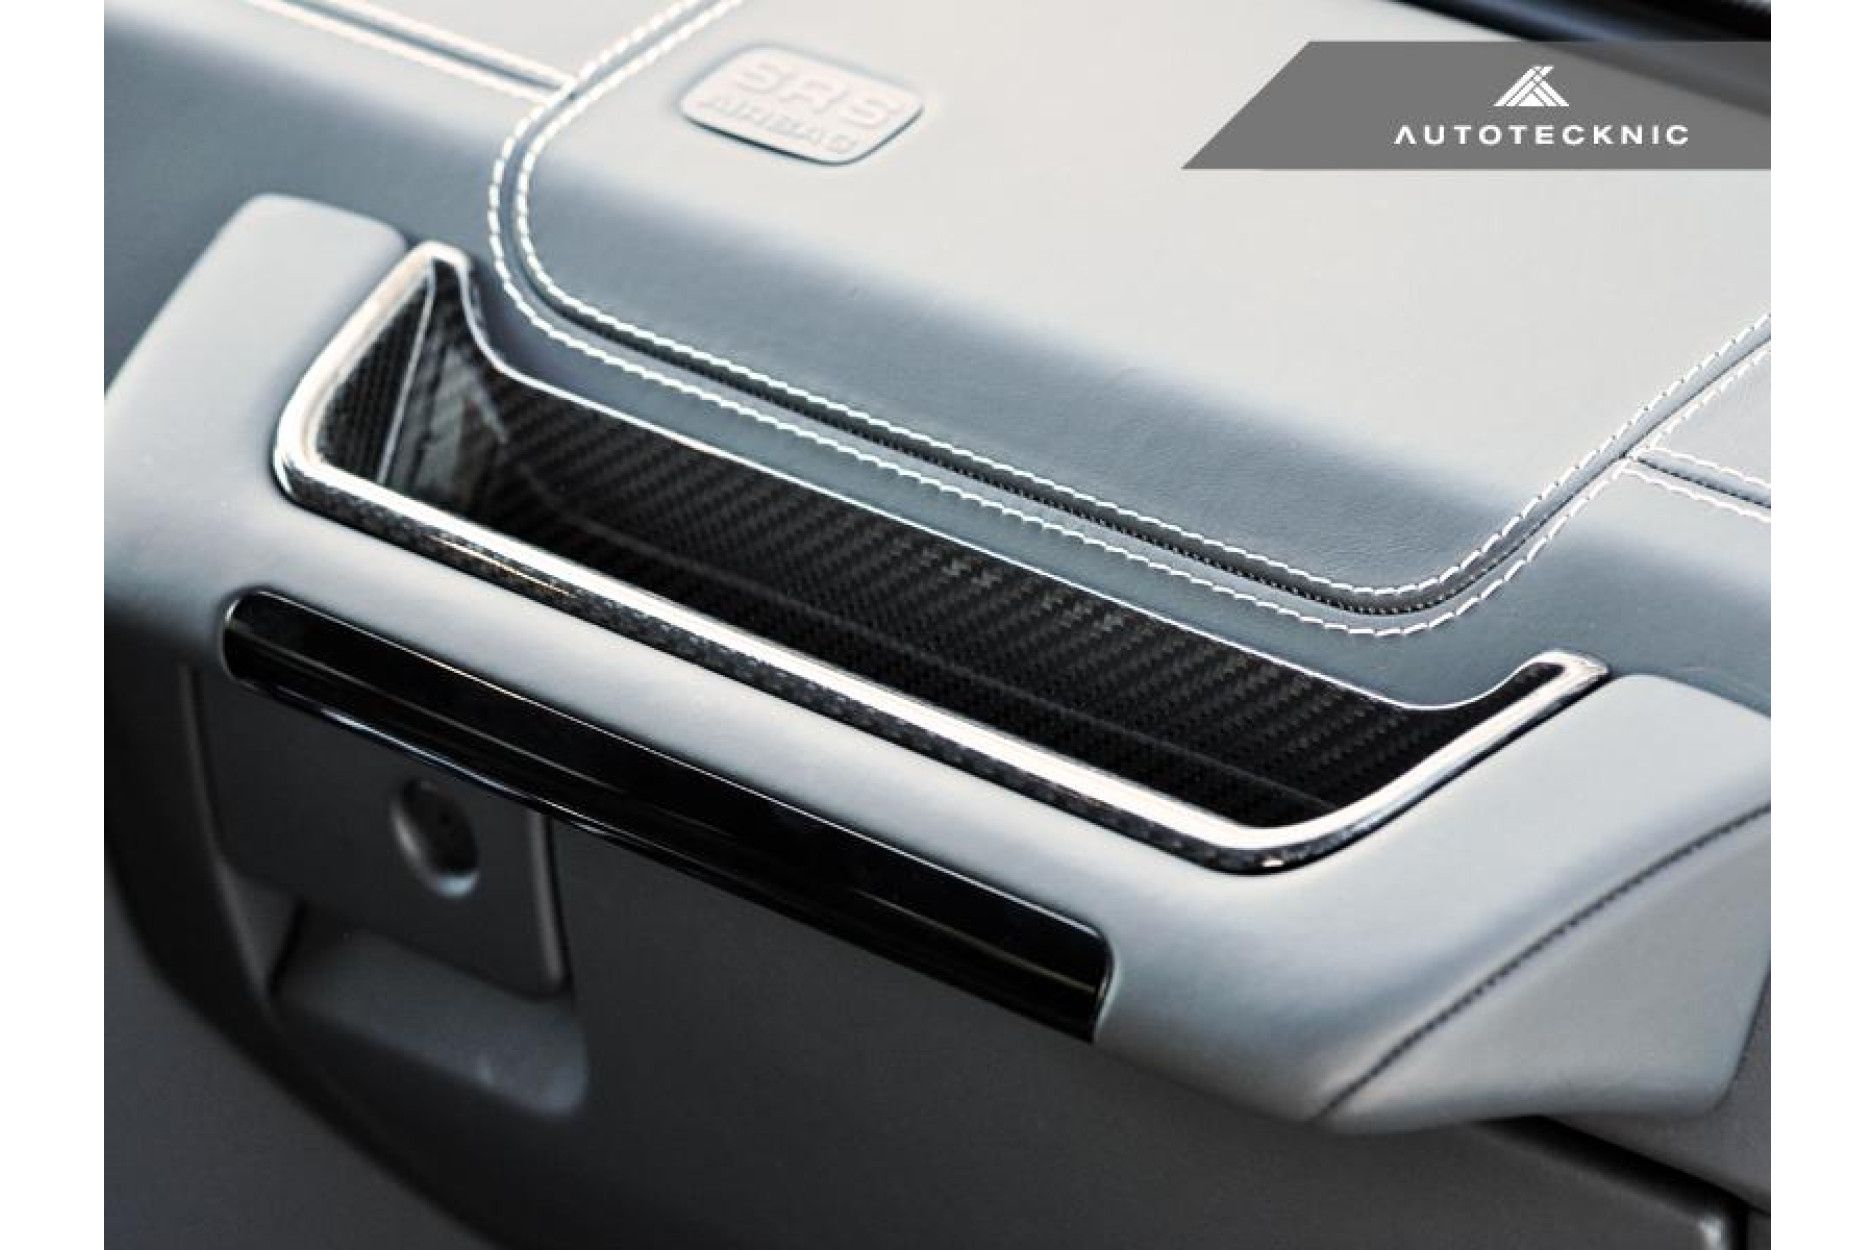 Autotecknic Trockencarbon Tür-Ablage für Mercedes Benz G-Klasse